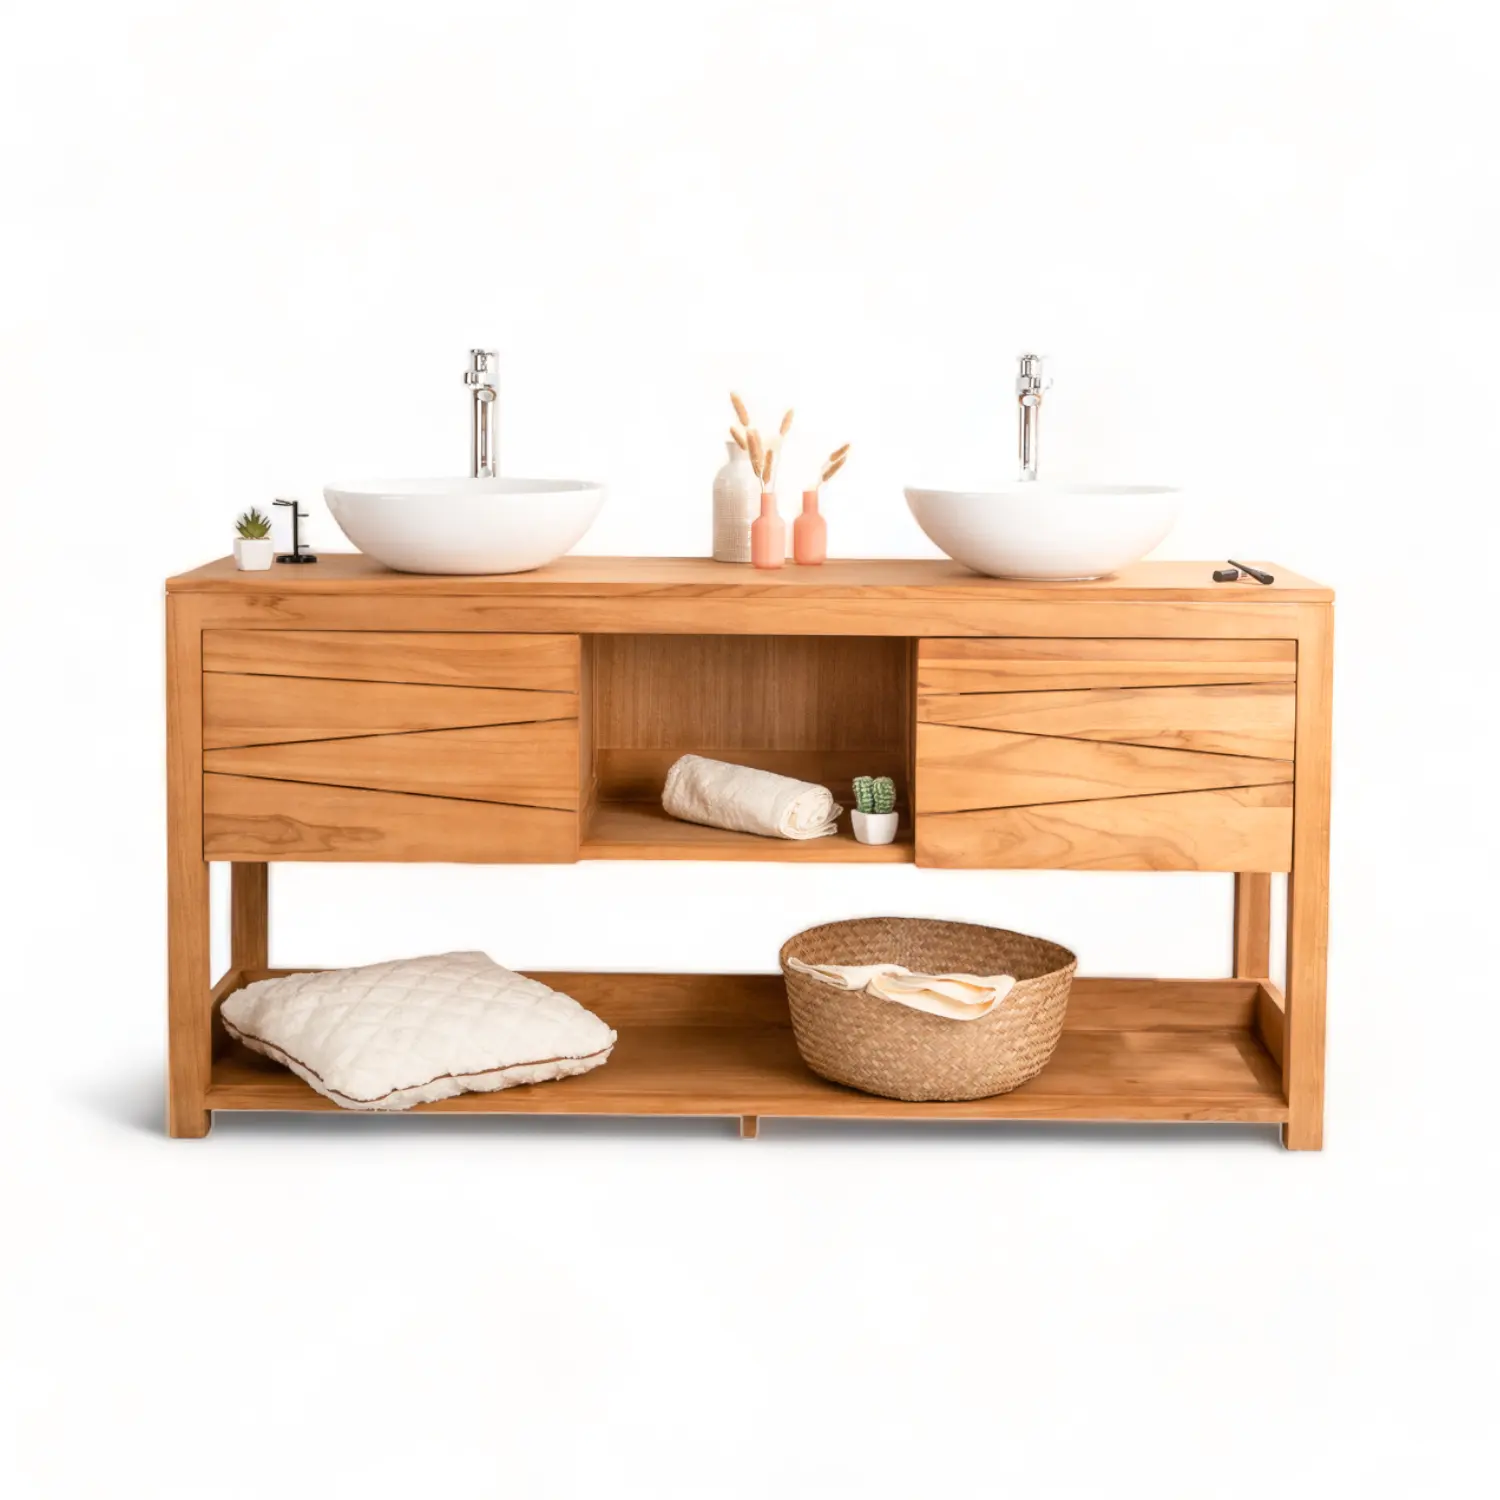 Современная мебель для ванной комнаты, напольный шкаф для гостиничной мебели, чайная ванная комната, двойная раковина, 160 см